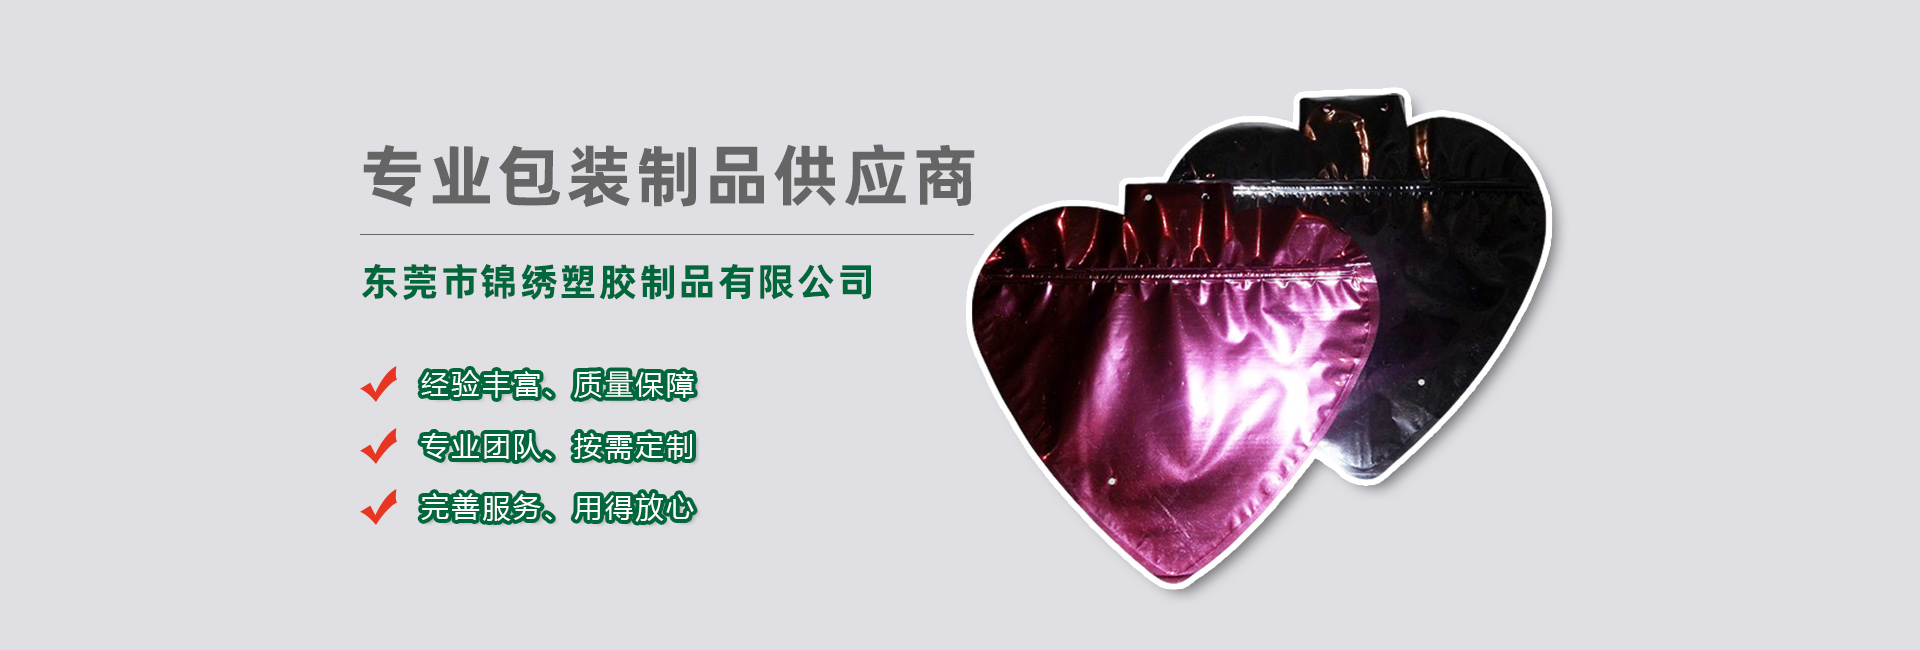 津南食品袋banner